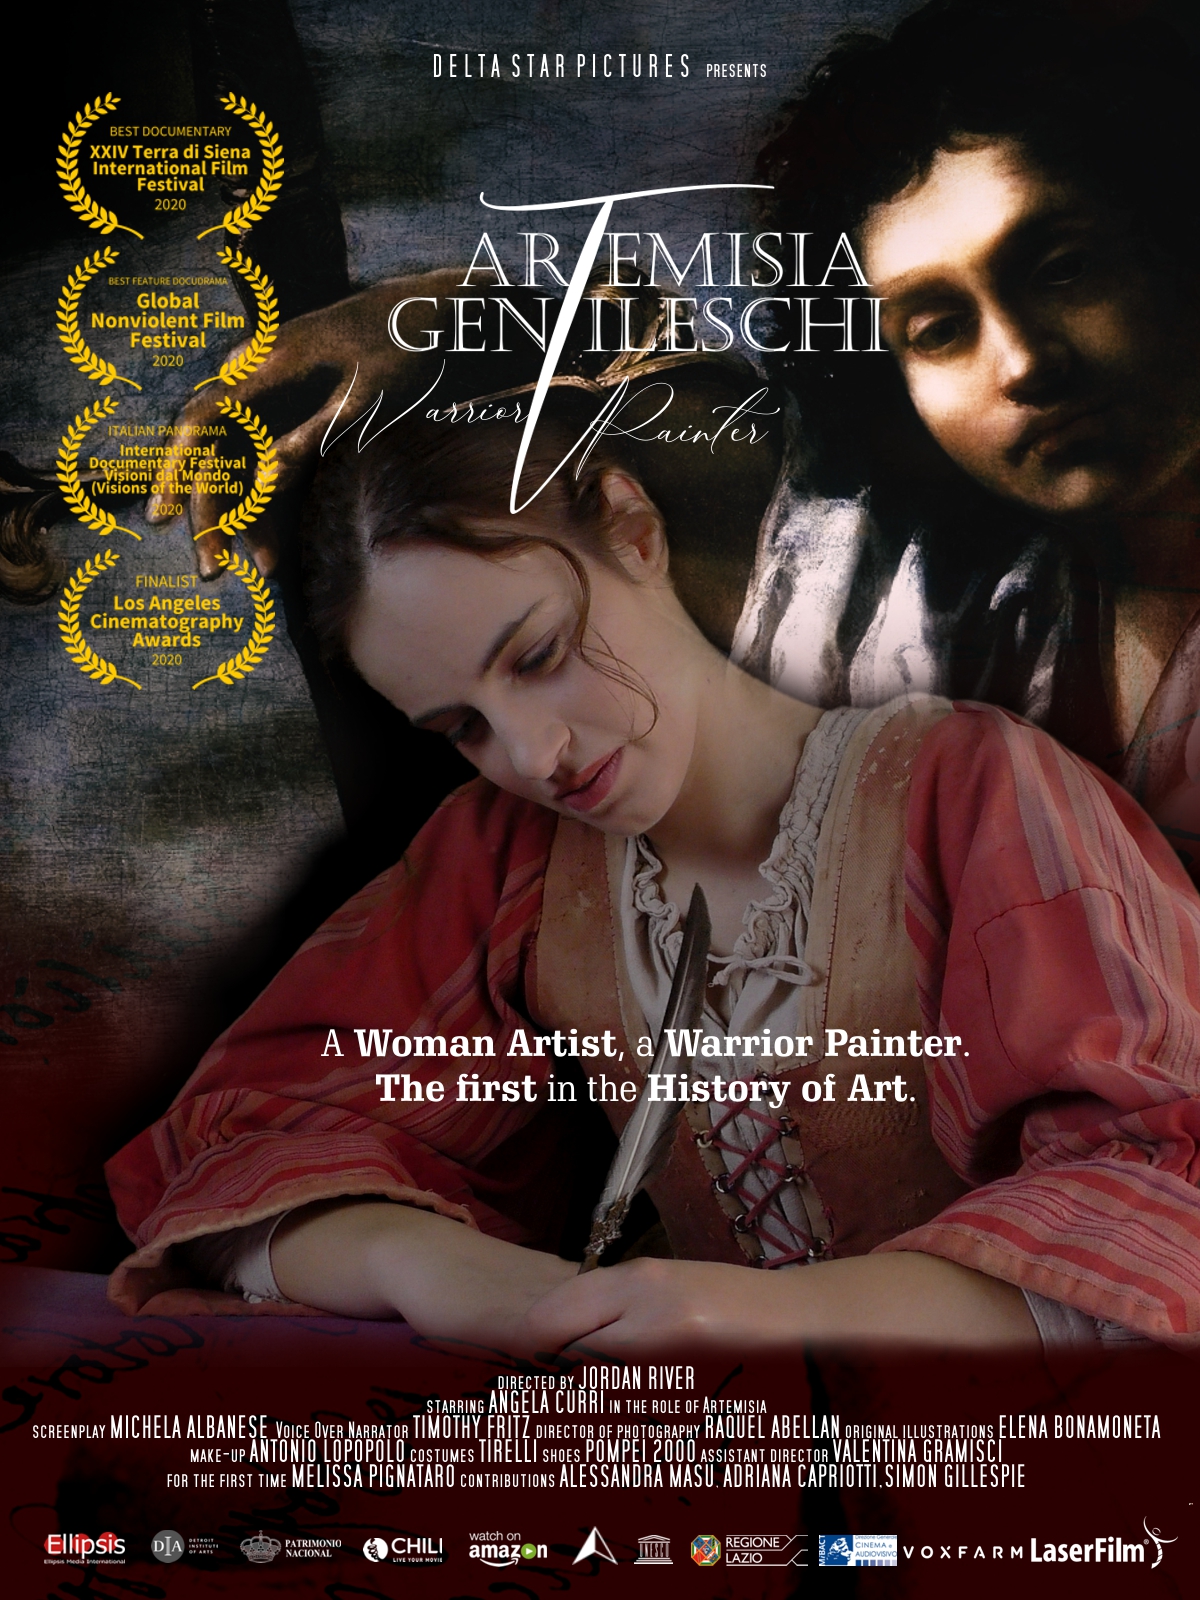 Artemisia Gentileschi: Warrior Painter (2020)